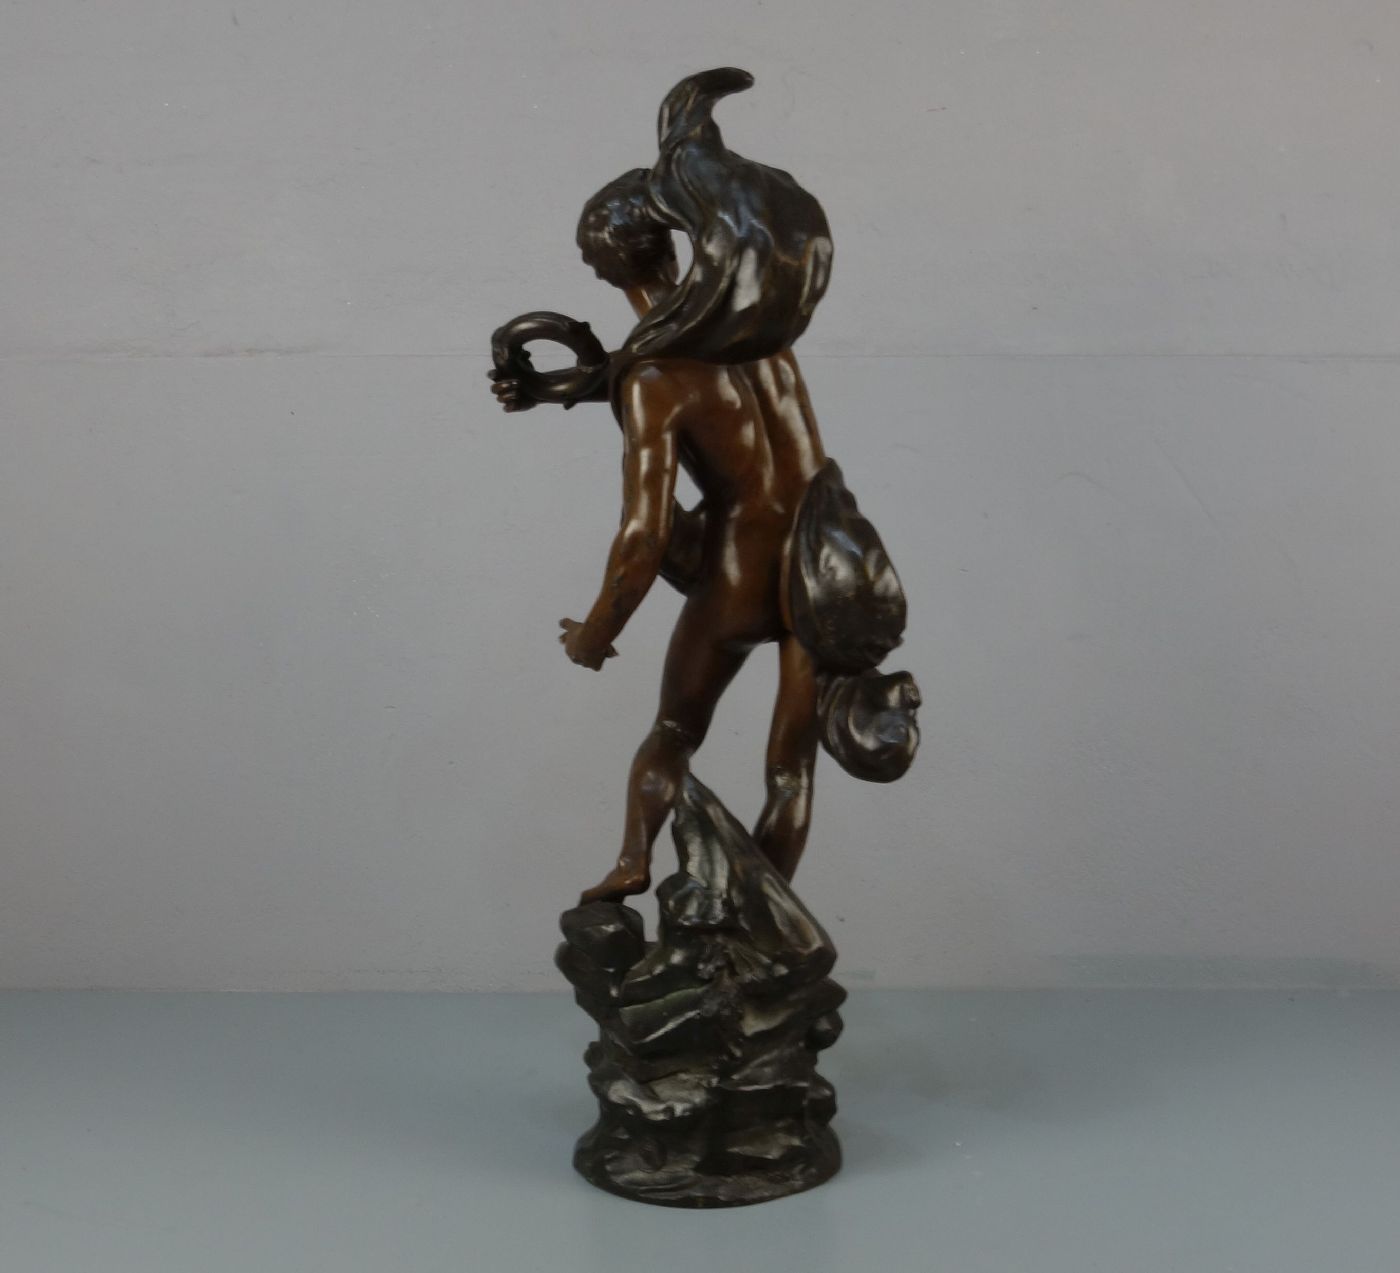 BRUCHON, ÉMILE (französischer Bildhauer, tätig um 1880 bis 1910), Skulptur / sculpture: "Allegorie - Image 3 of 3